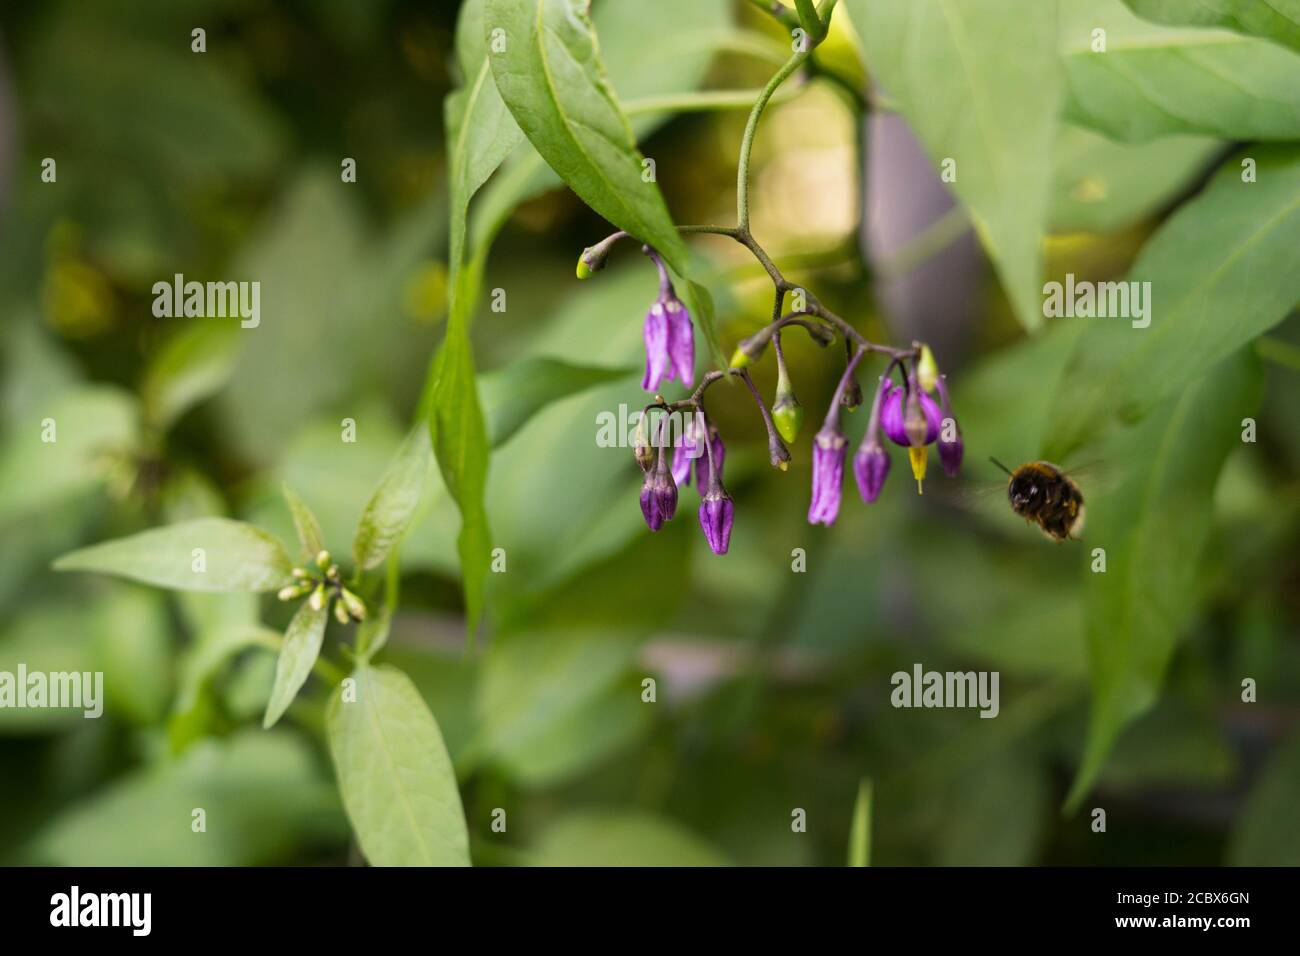 Eine Nahaufnahme einer Hummel, die zu den Blüten des Nachtschattens Solanum dulcamara fliegt. Natürlicher grüner Hintergrund. Stockfoto